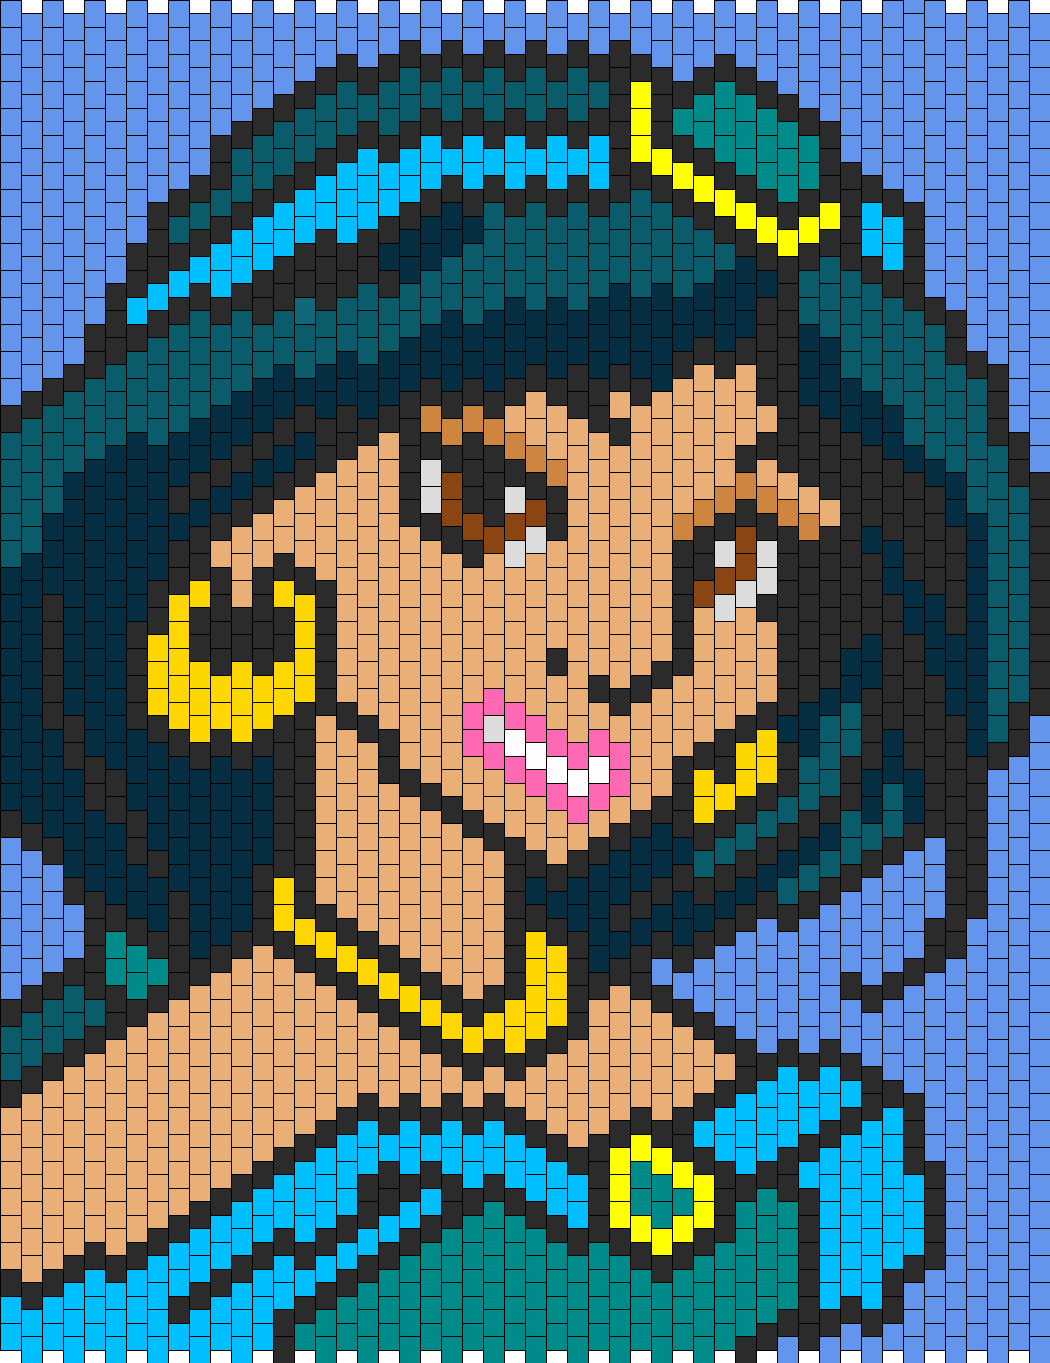 Aladdin Princess Jasmine